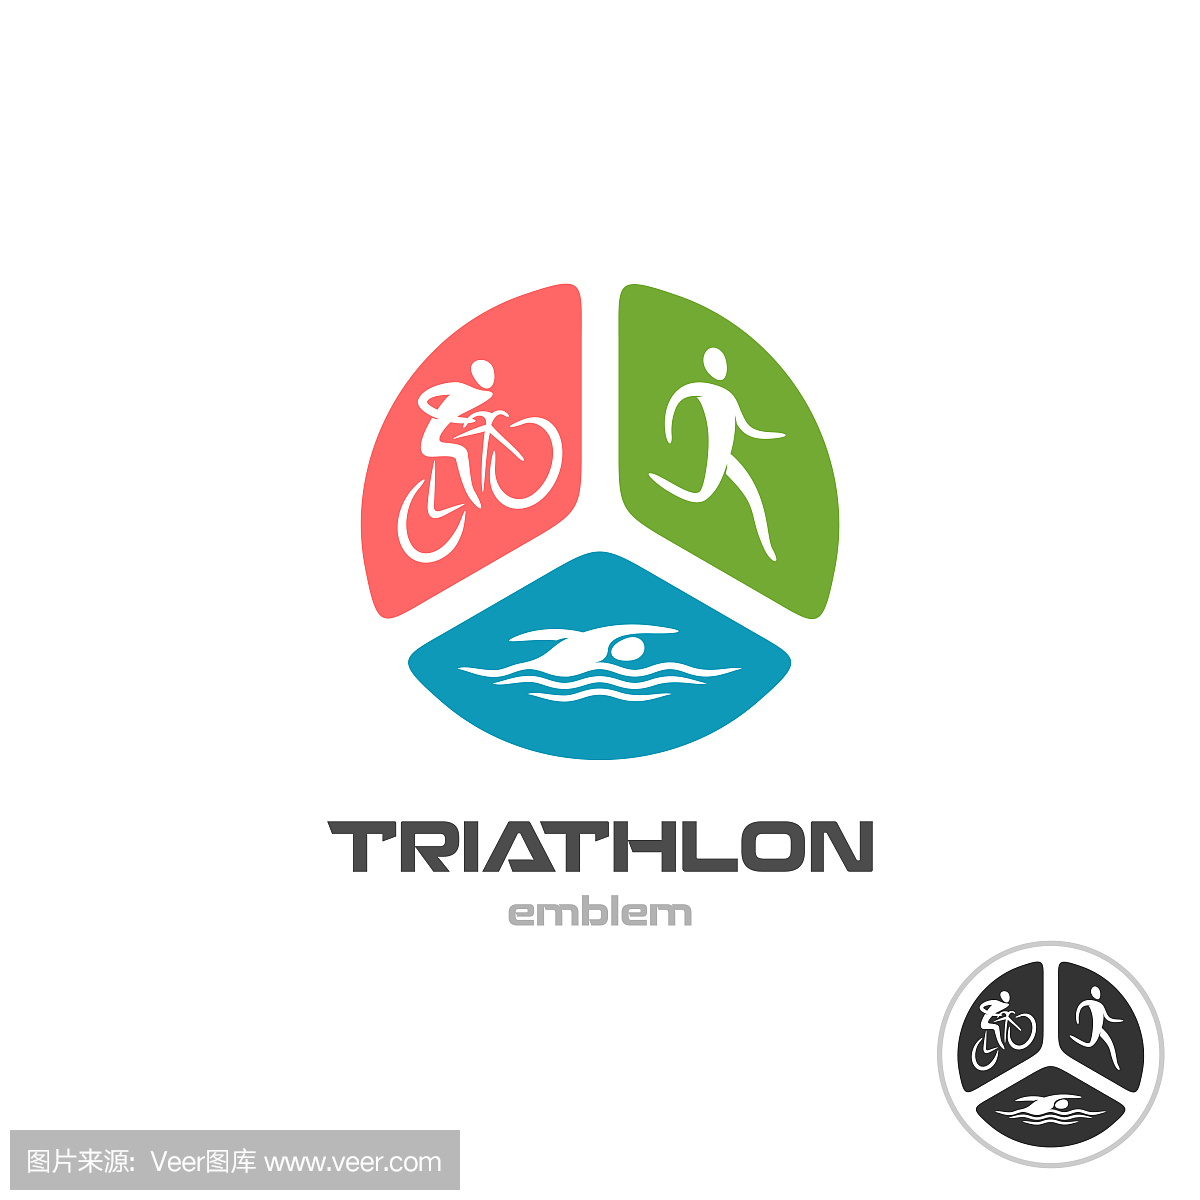 铁人三项运动符号。骑自行车的人,跑步和游泳